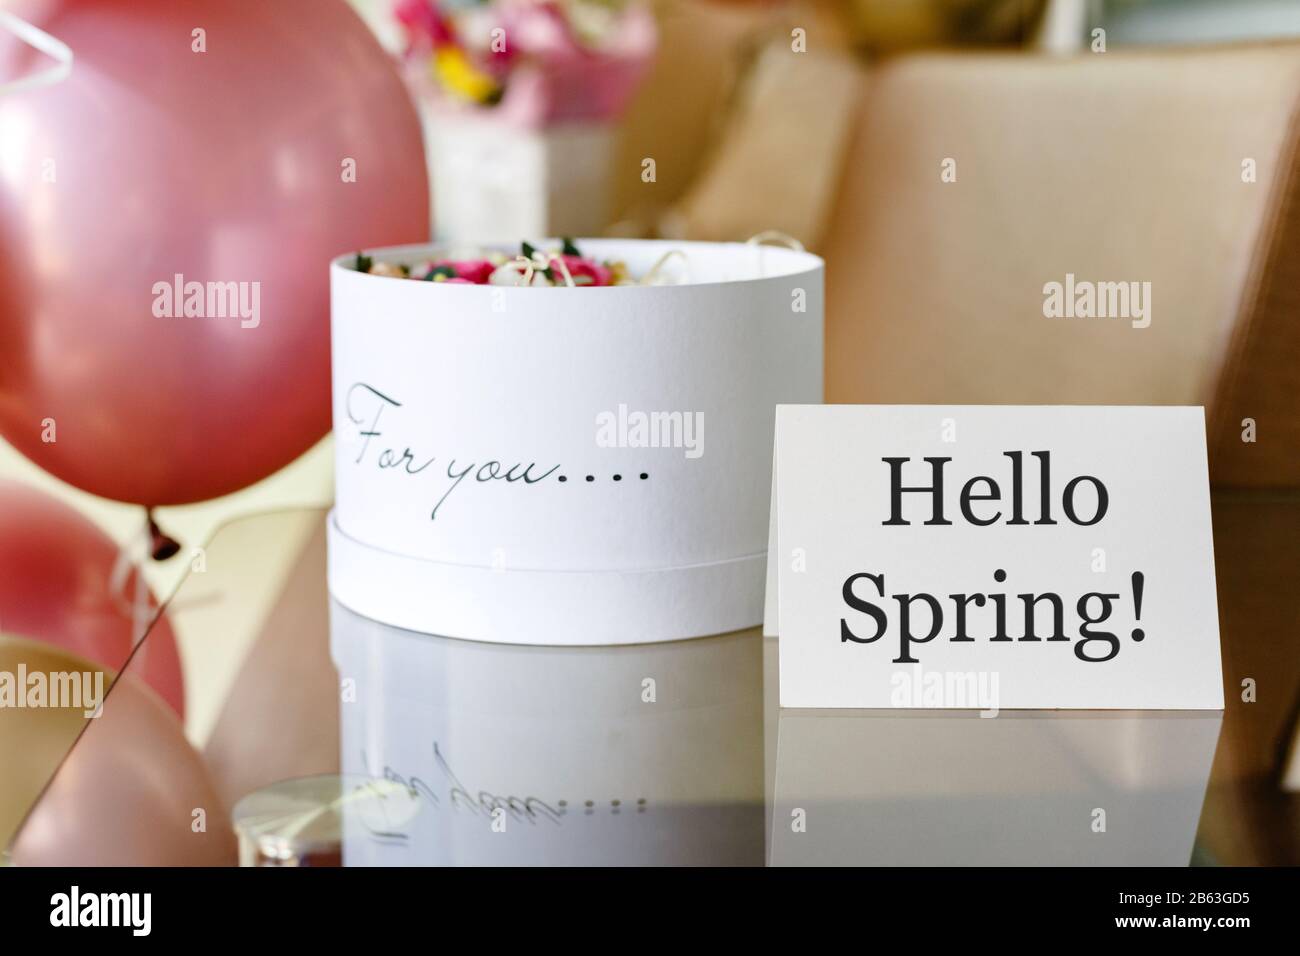 Text Hello Spring auf weißer Karte mit Blumenkasten. Weißer Hut runder Kasten mit rosa Rosen Blumen und Text Für Sie. Festliche Ballons in Pink und Gold. Stockfoto